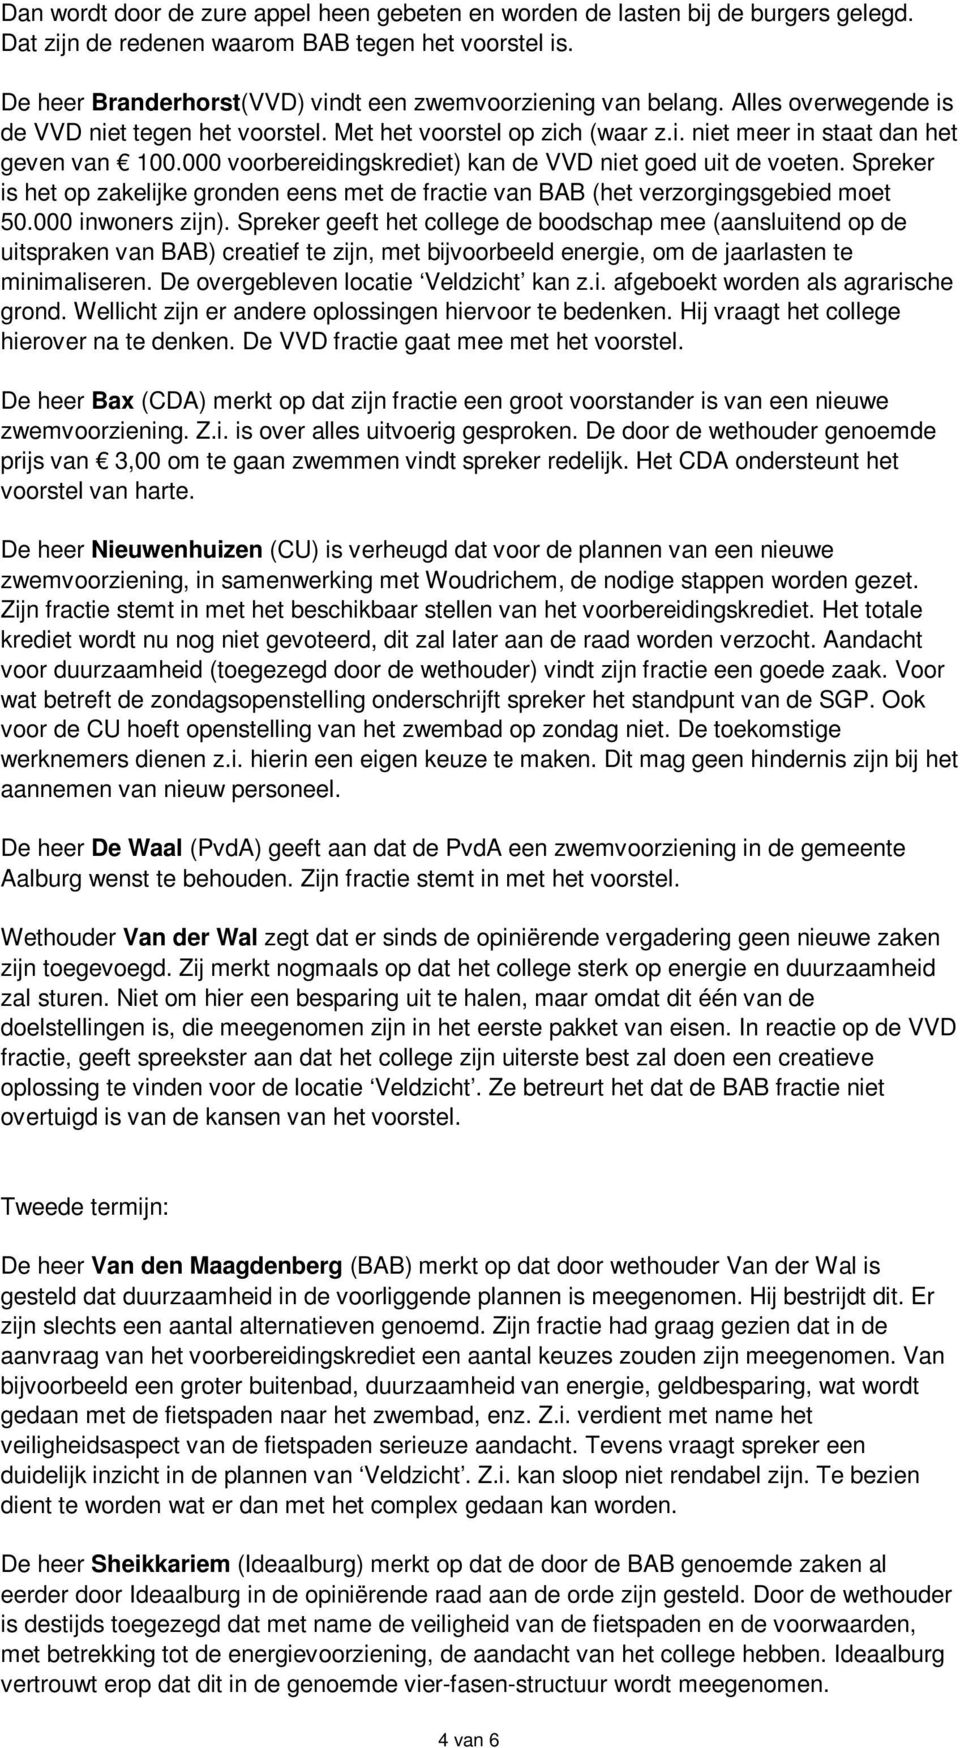 000 voorbereidingskrediet) kan de VVD niet goed uit de voeten. Spreker is het op zakelijke gronden eens met de fractie van BAB (het verzorgingsgebied moet 50.000 inwoners zijn).